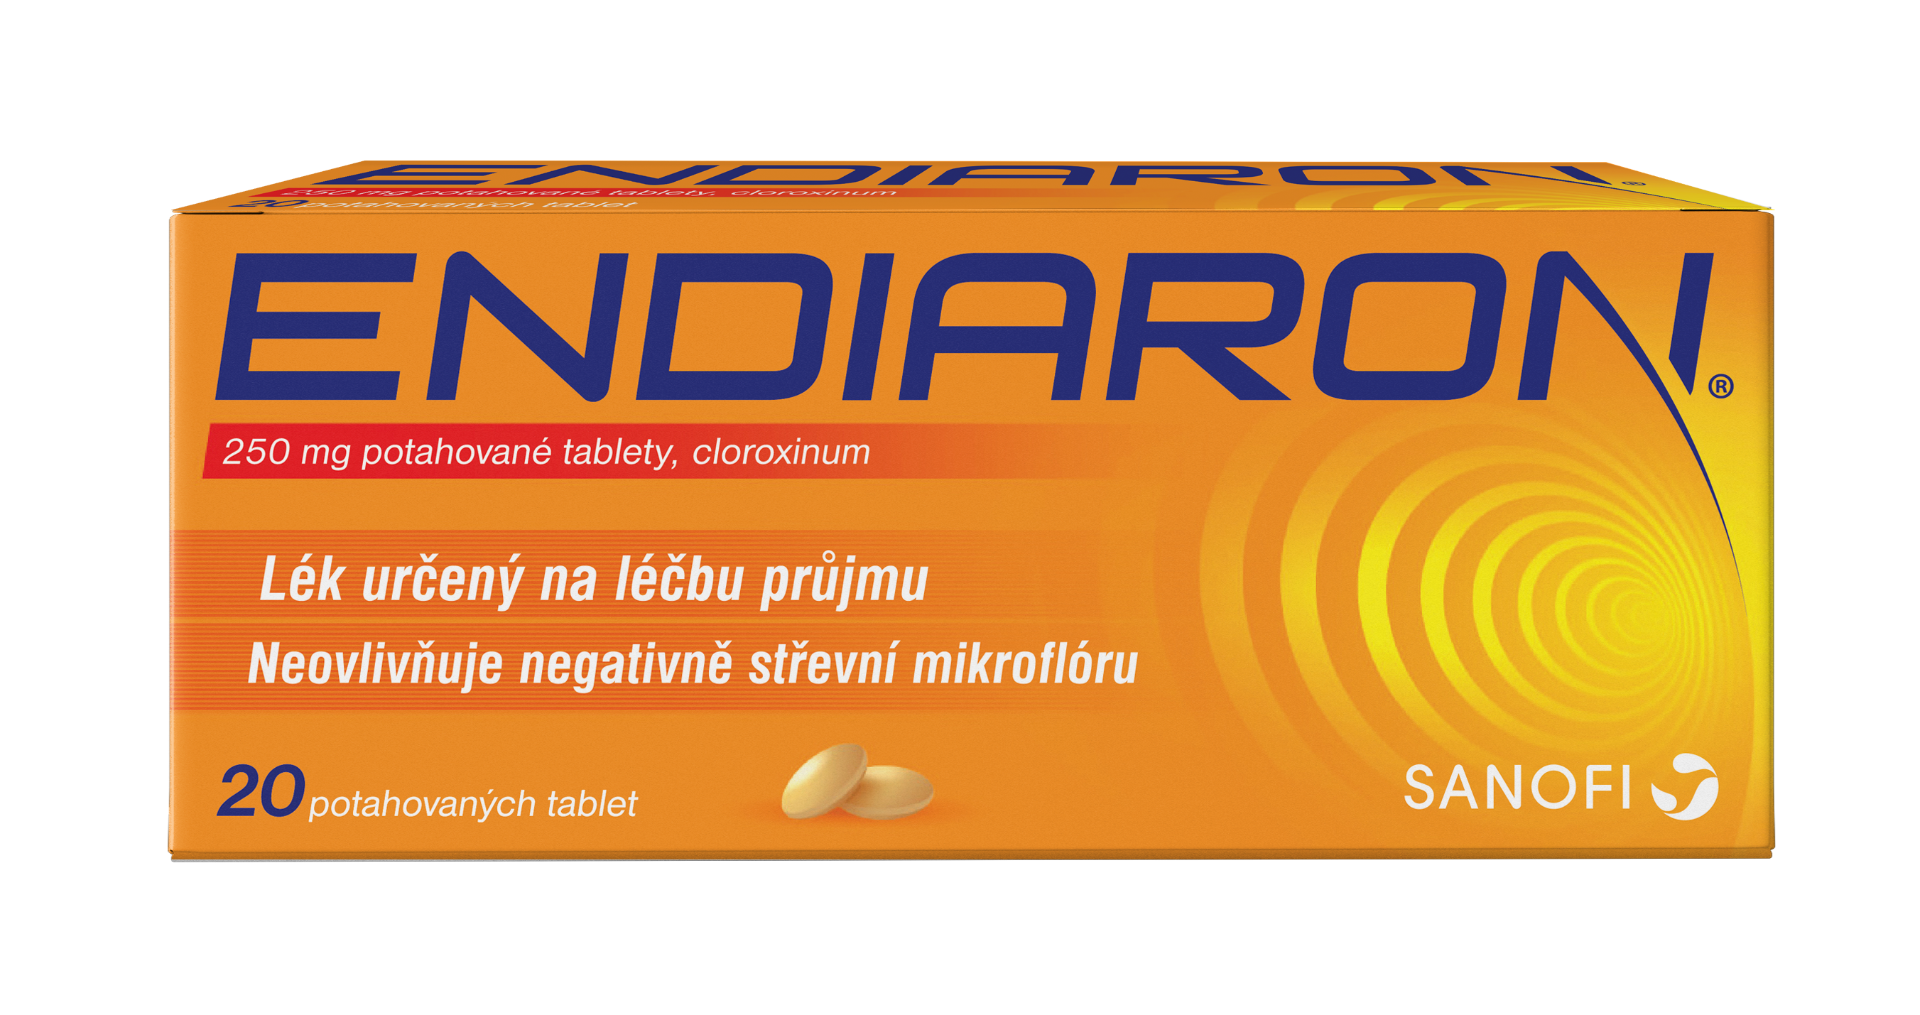 Endiaron 250 mg 20 tablet Endiaron